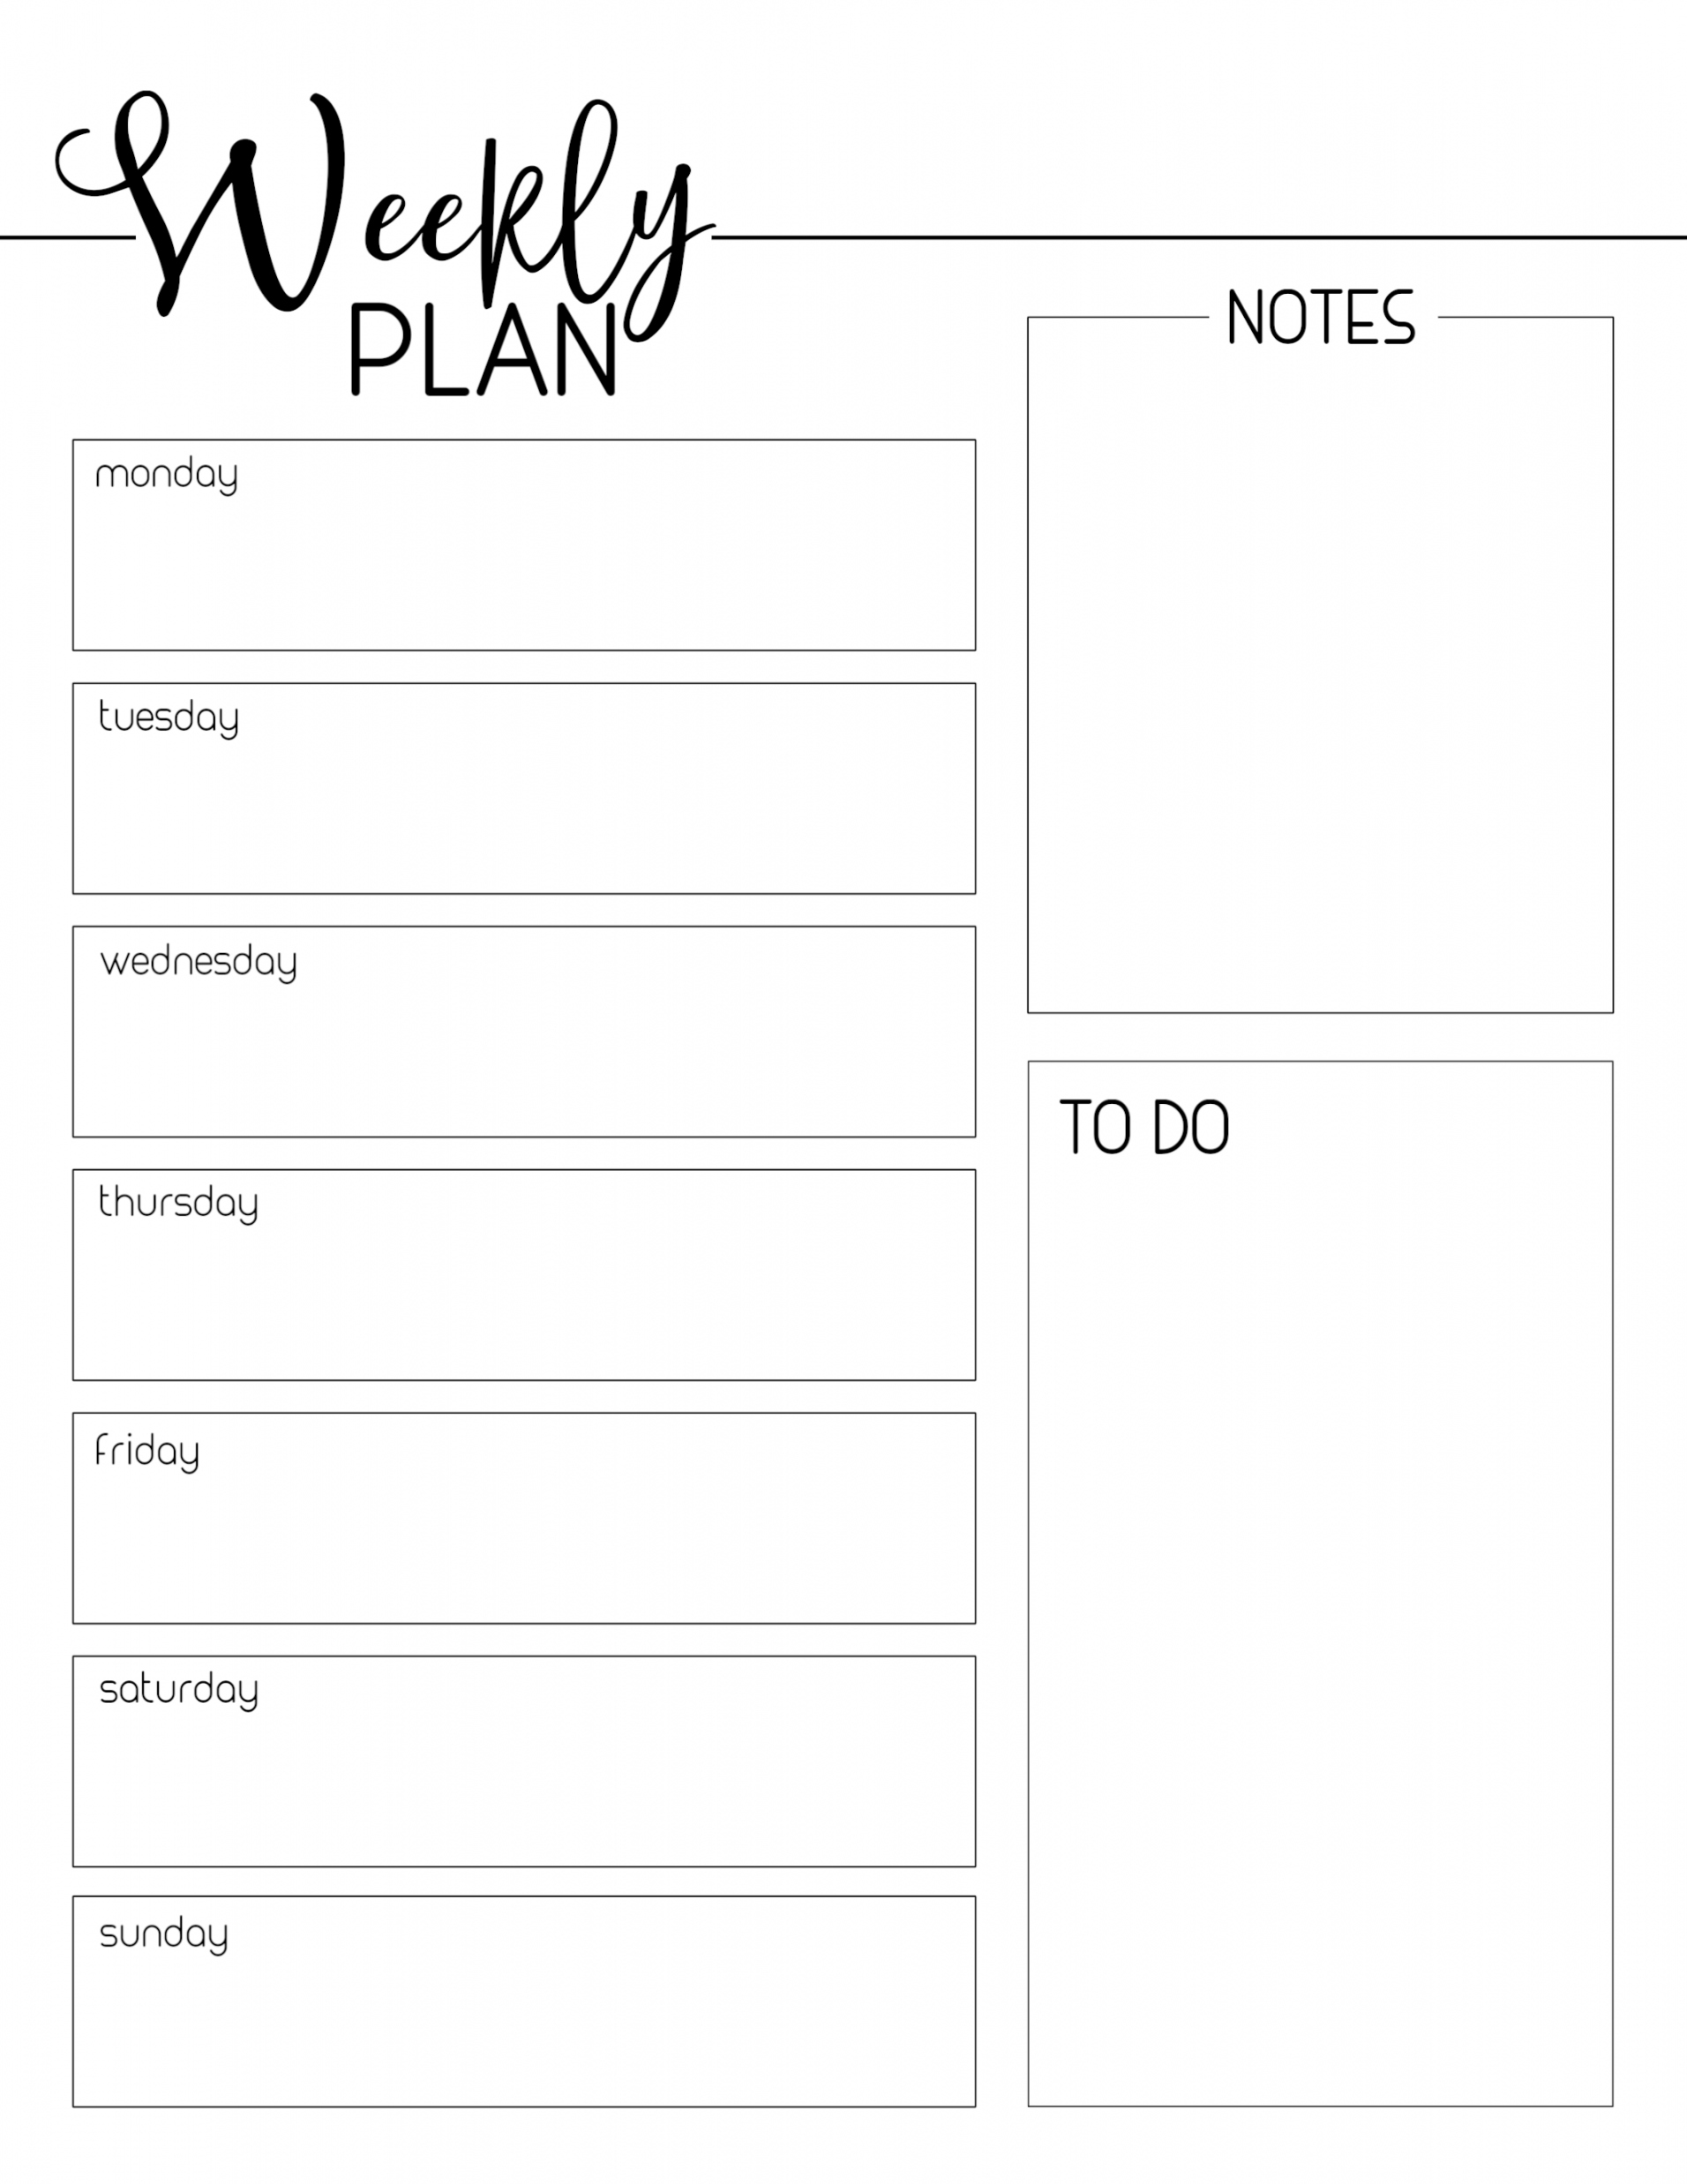 Weekly Planner Printable Free - Printable - Weekly Planner Template Free Printable - Paper Trail Design